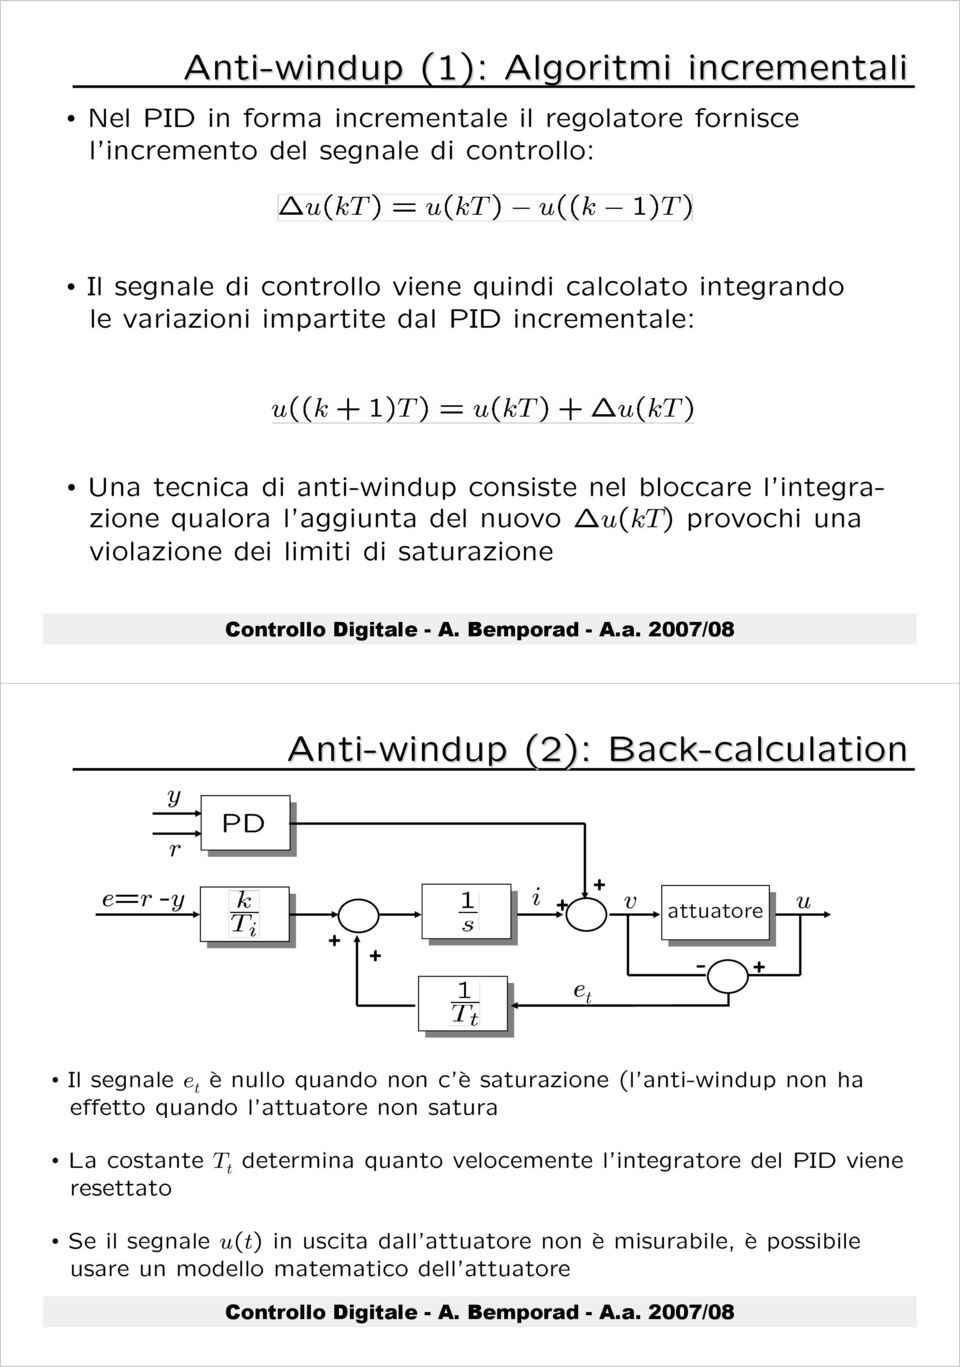 e=r -y PD Anti-windup (2): Back-calculation calculation + + i + + e t v attuatore - + u Il segnale e t è nullo quando non c è saturazione (l anti-windup non ha effetto quando l attuatore non